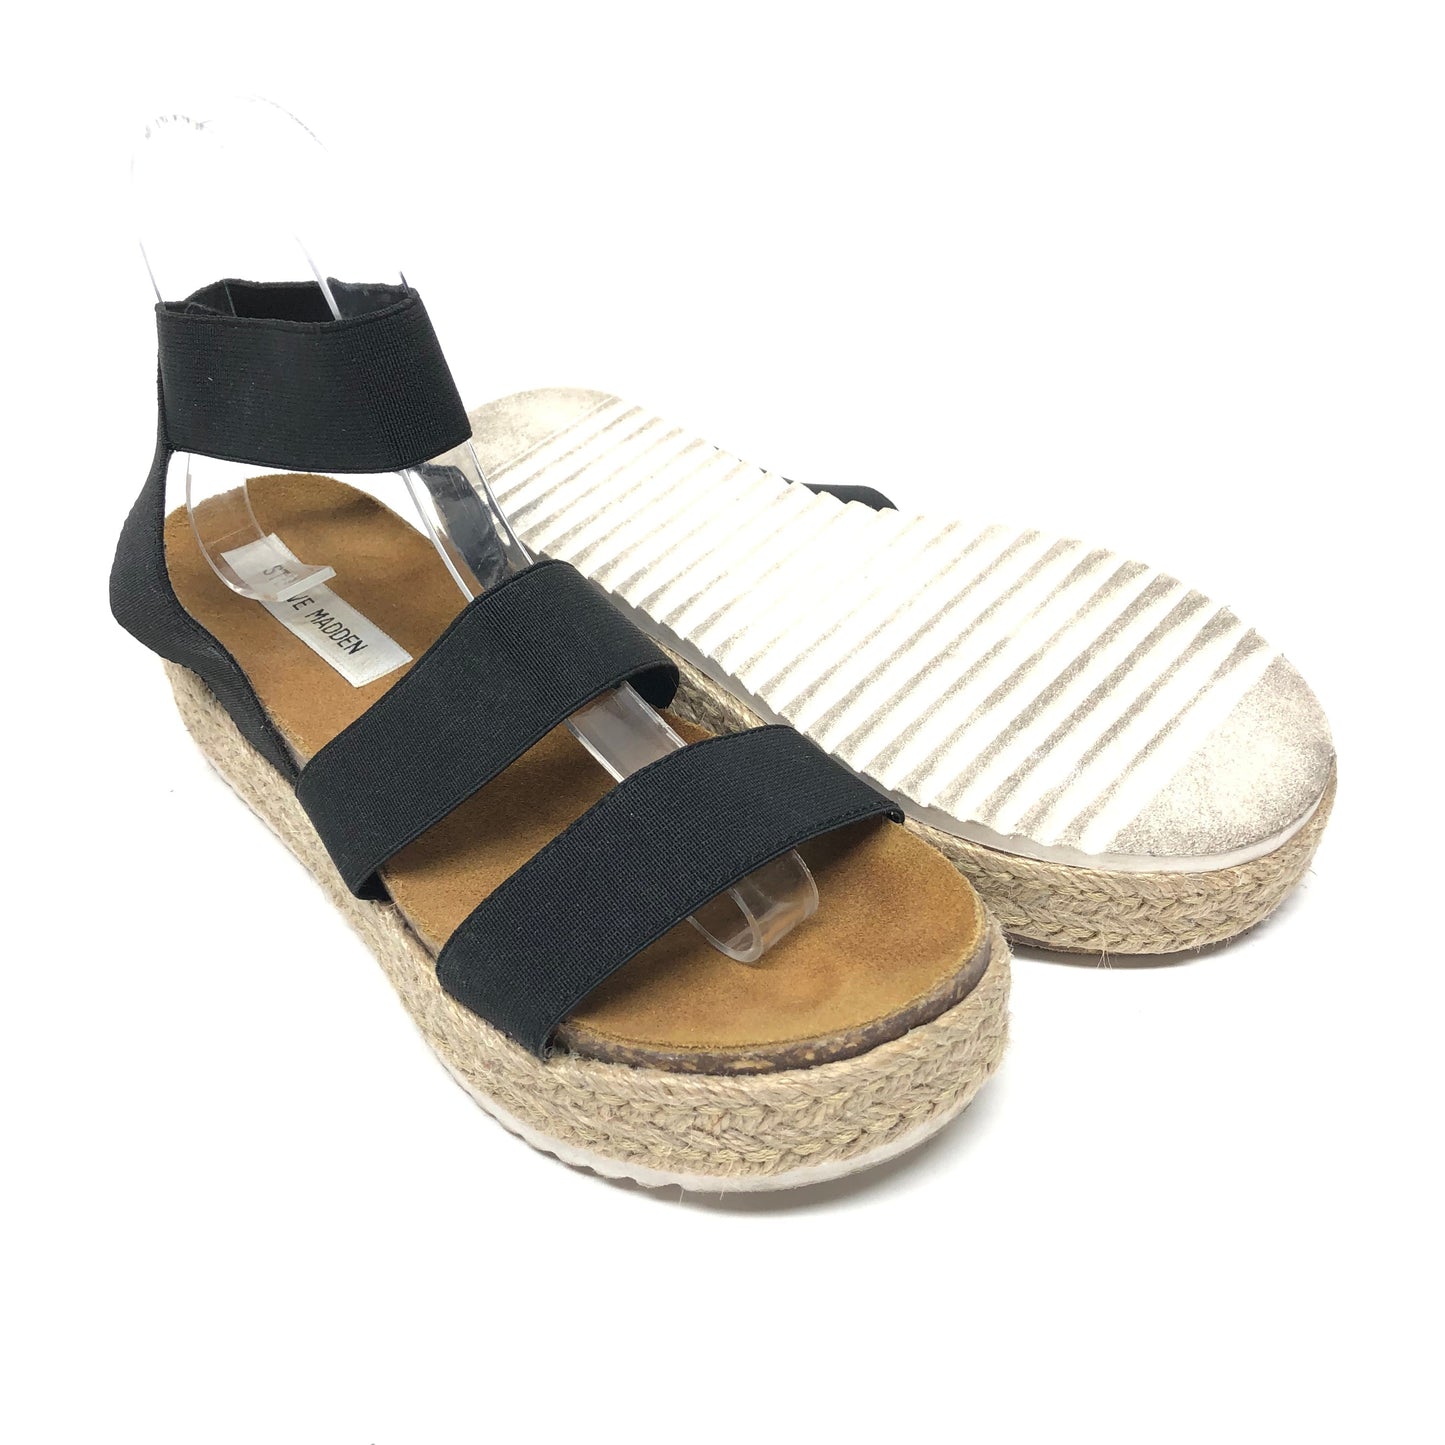 Black Sandals Heels Platform Steve Madden, Size 8